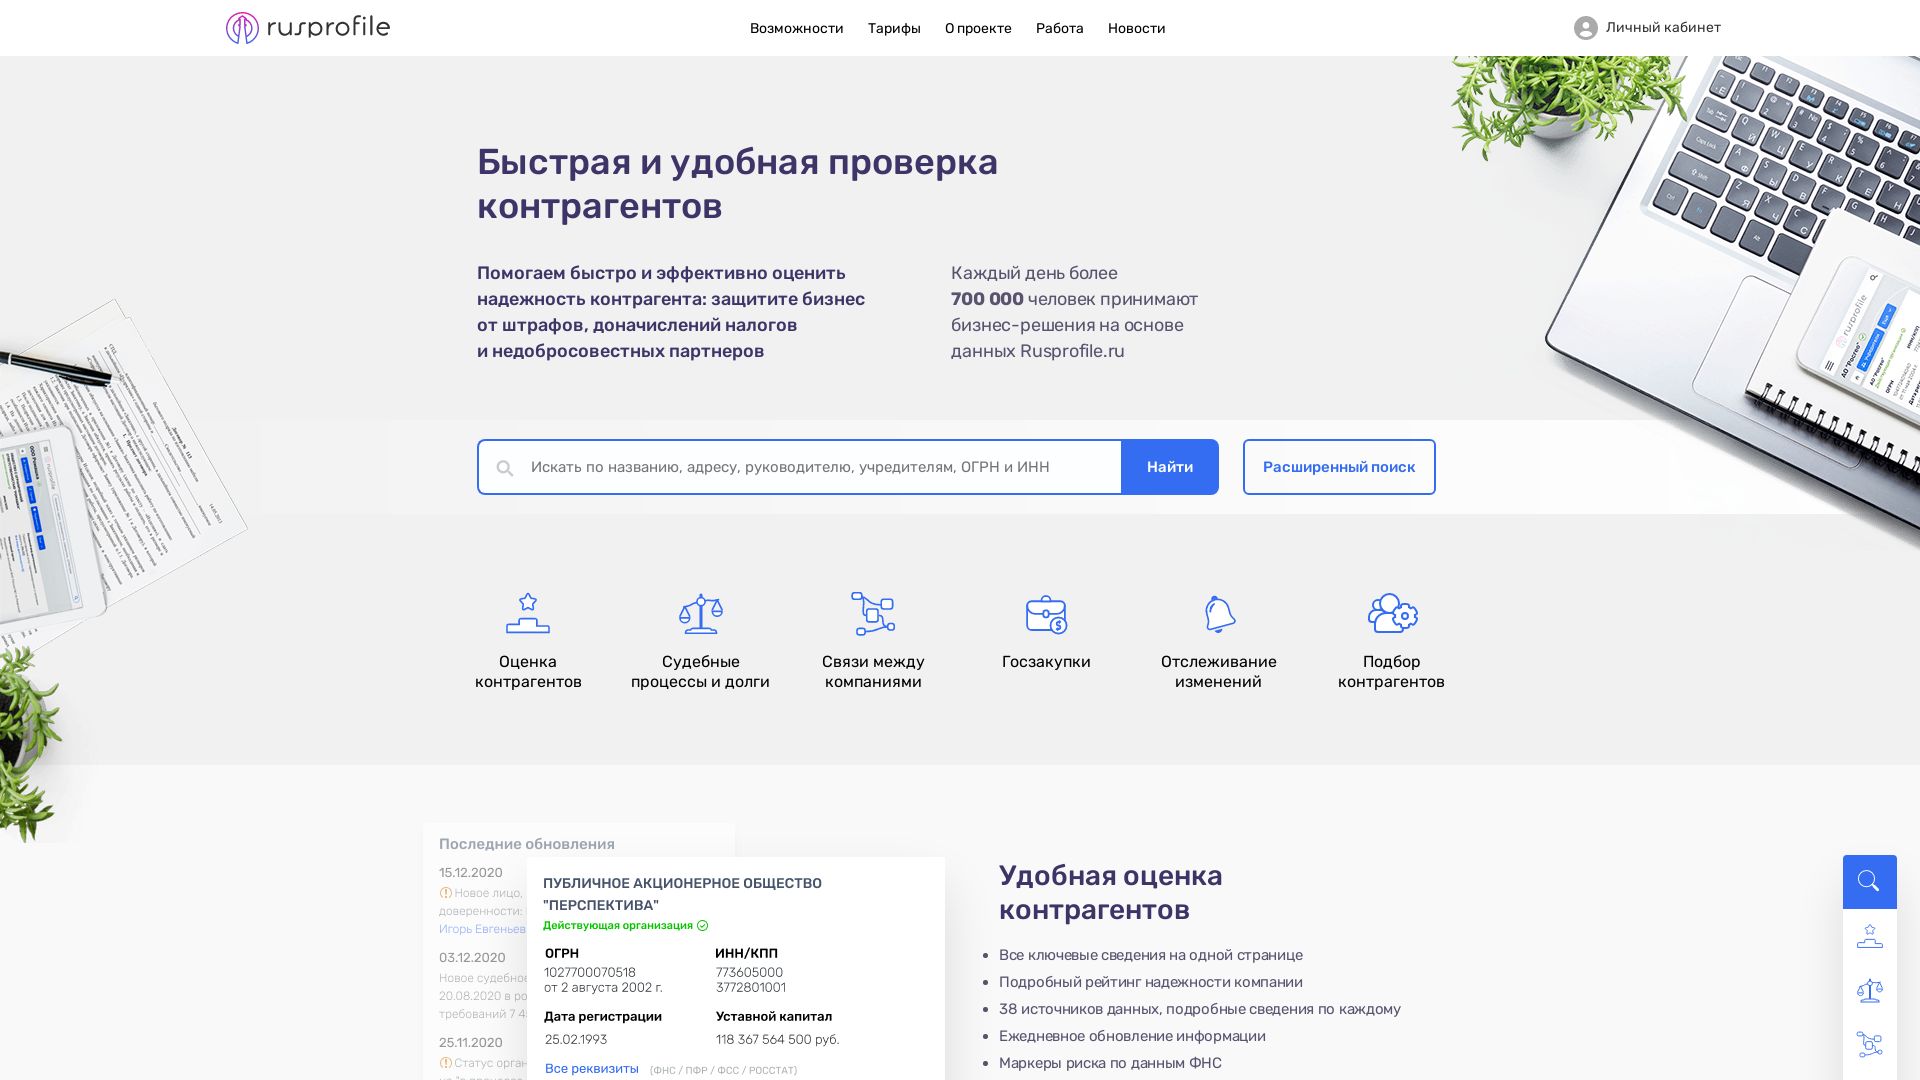 网站状态 rusprofile.ru 是  在线的